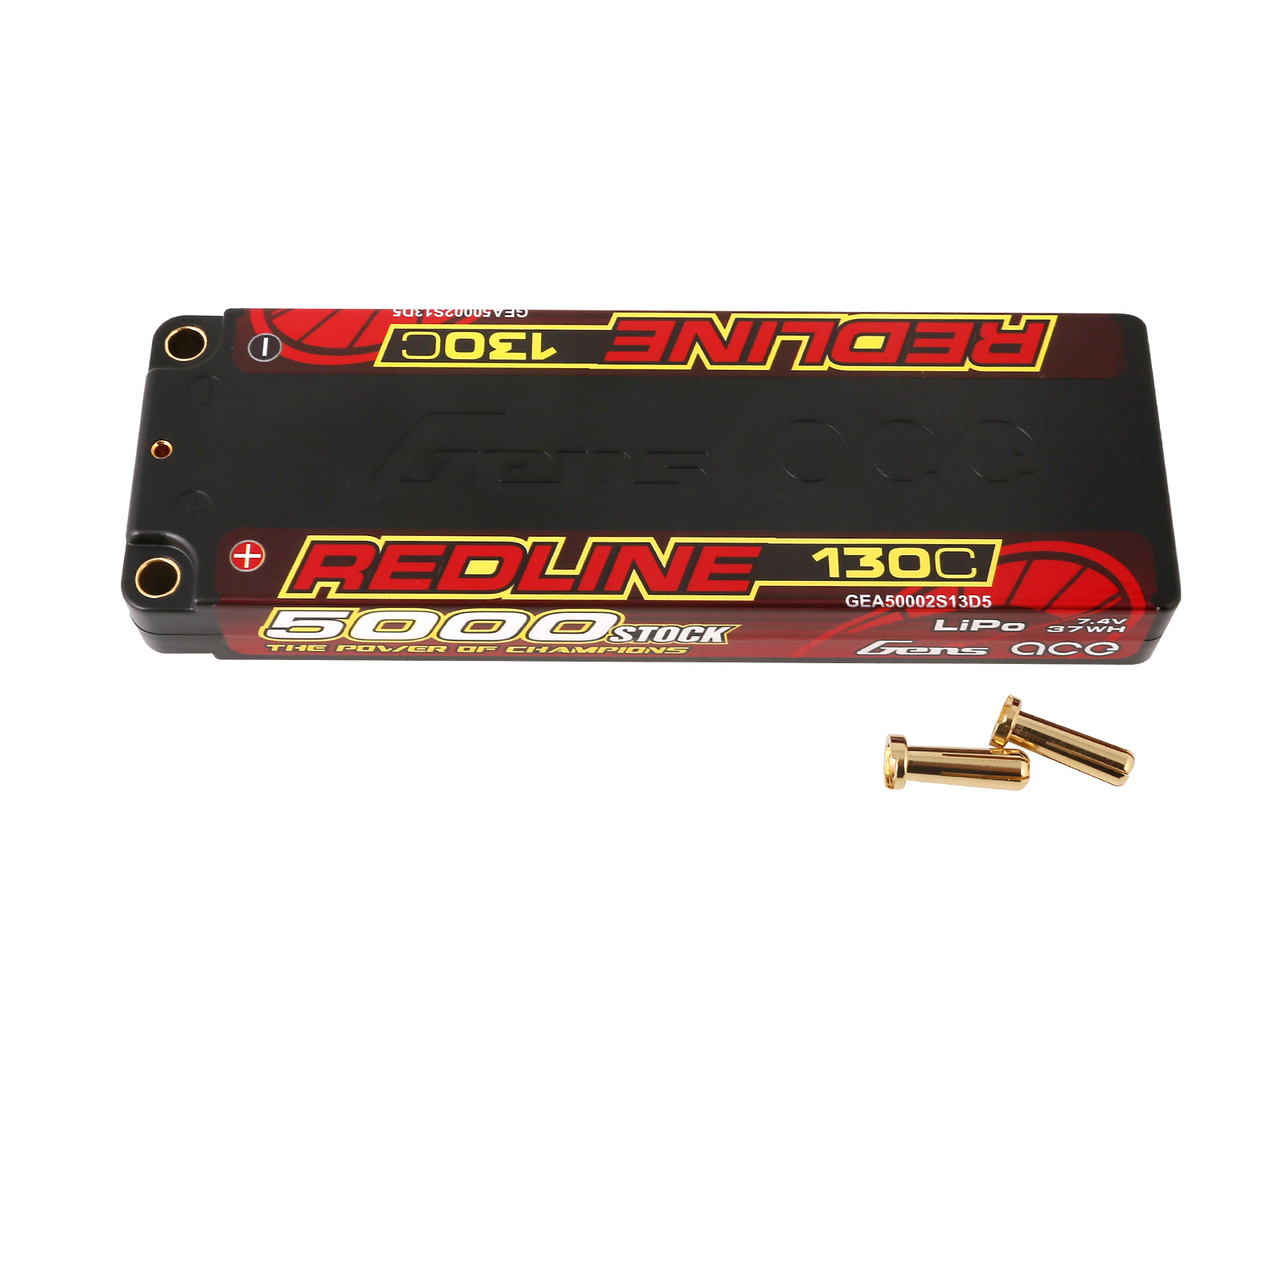 Gens ace Redline Series 5000mAh 7.6V 130C 2S1P HardCase 56# HV Lipo Battery with 5.0mm bullet